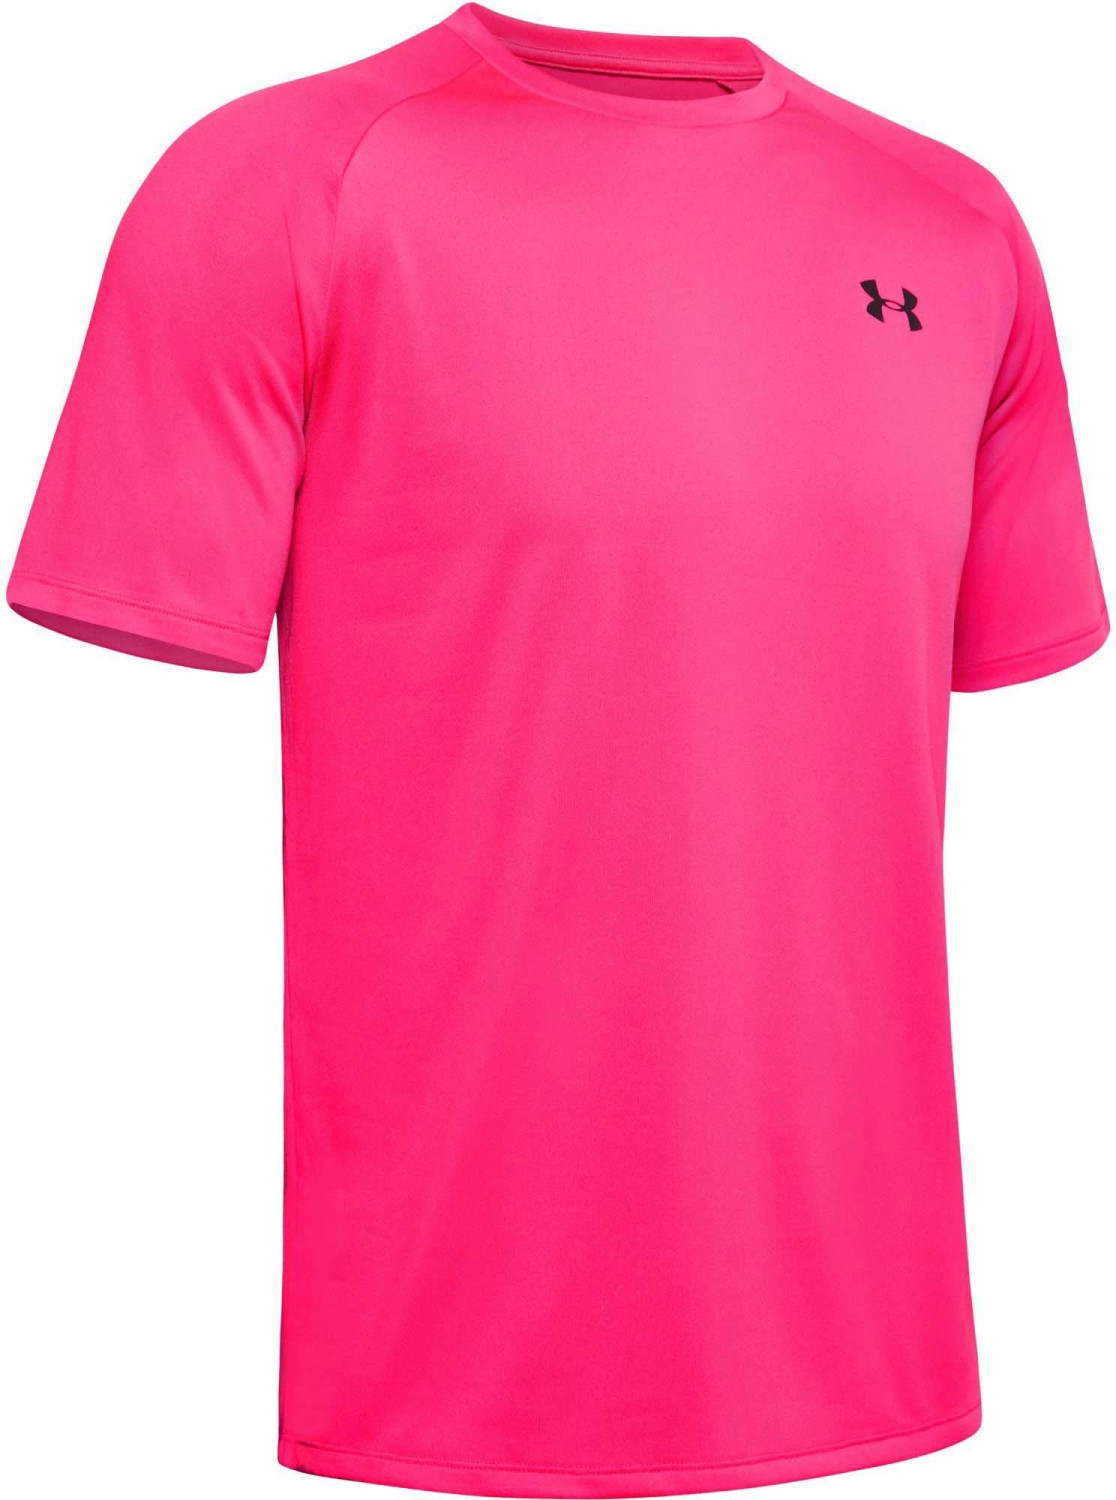 Buy Under Armour Men T-Shirt UA Tech Short Sleeve pink (687) from £21. ...